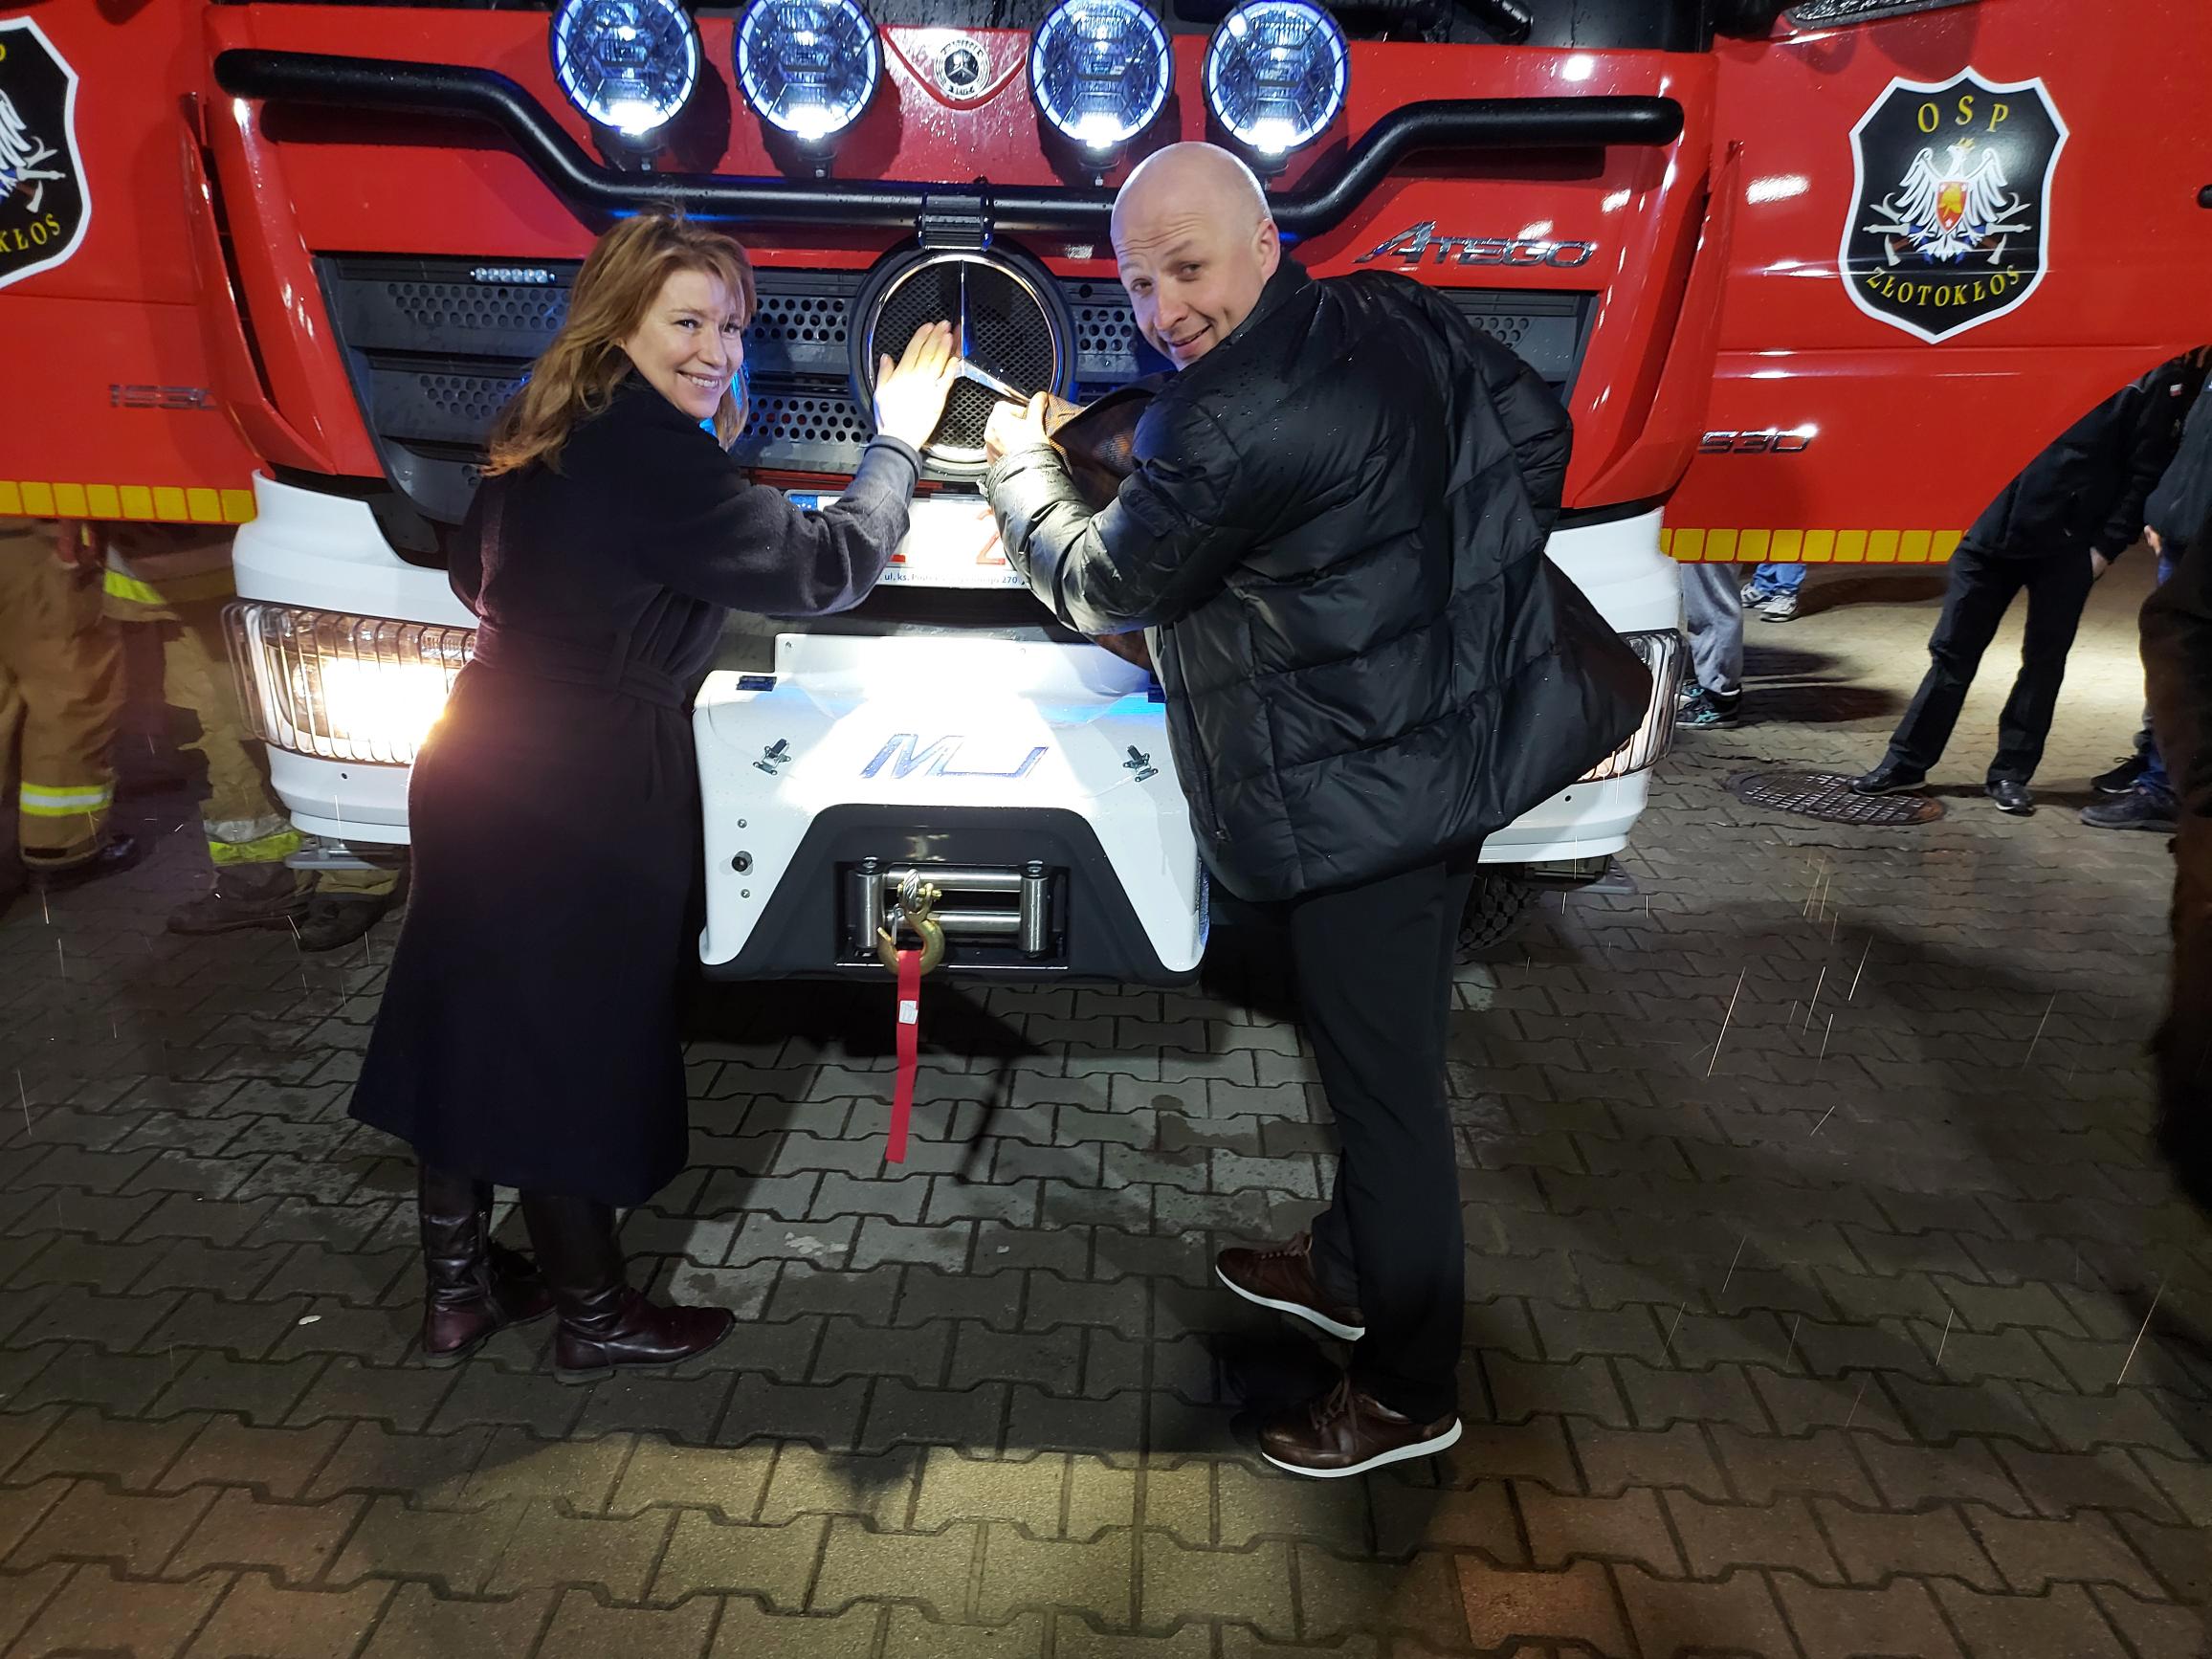 Samochód za 1 mln zł dla OSP Złotokłos. Na zdjęciu Burmistrzowie Daniel Putkiewicz i Hanna Kułakowska-Michalak przy masce nowego samochodu.